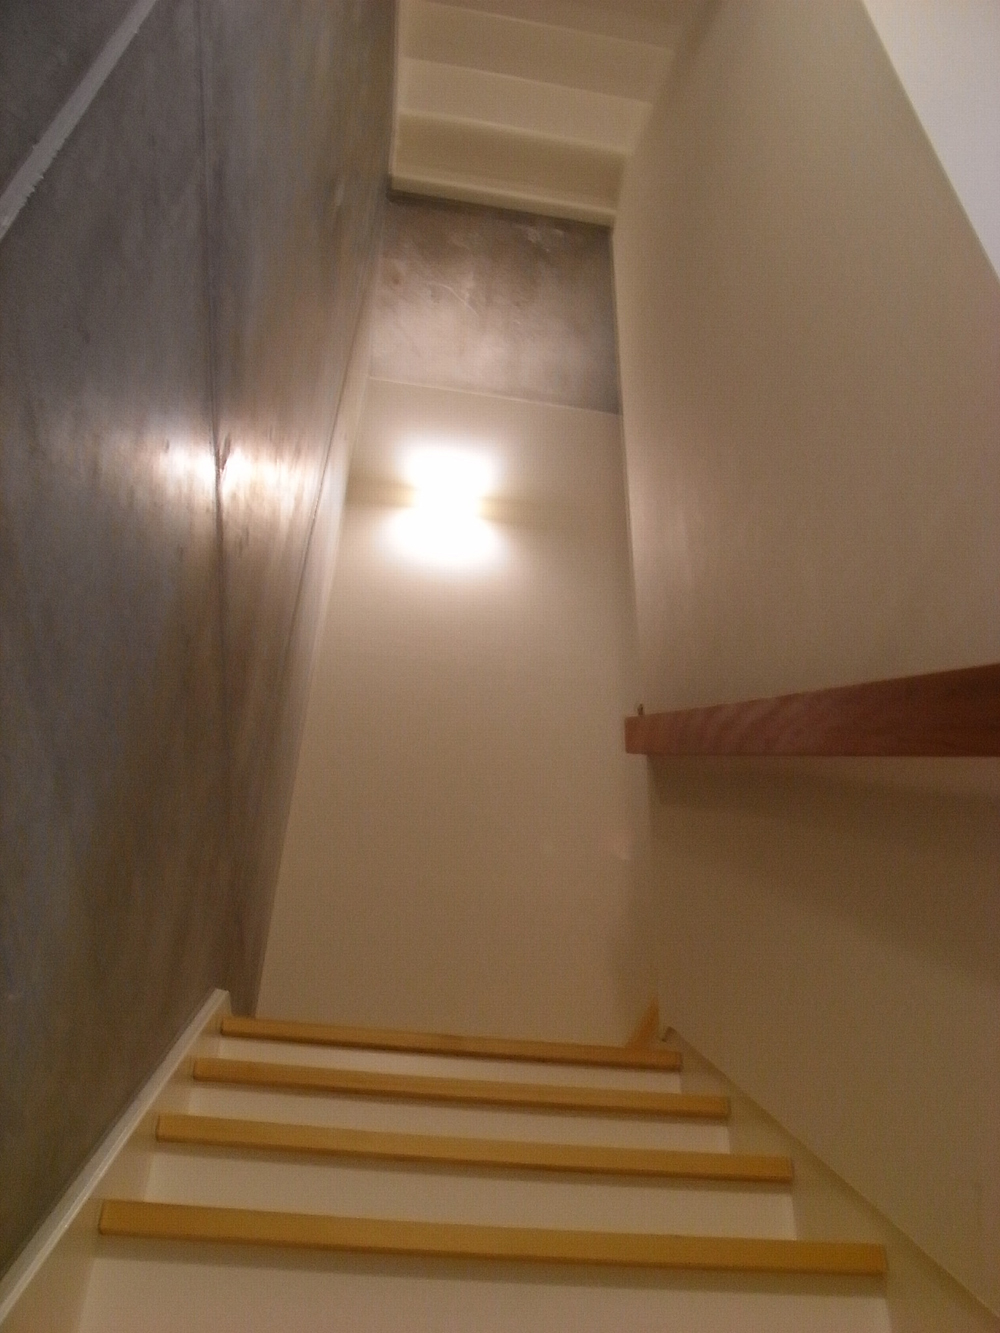 木コンクリートなど素材の対比を楽しめる階段